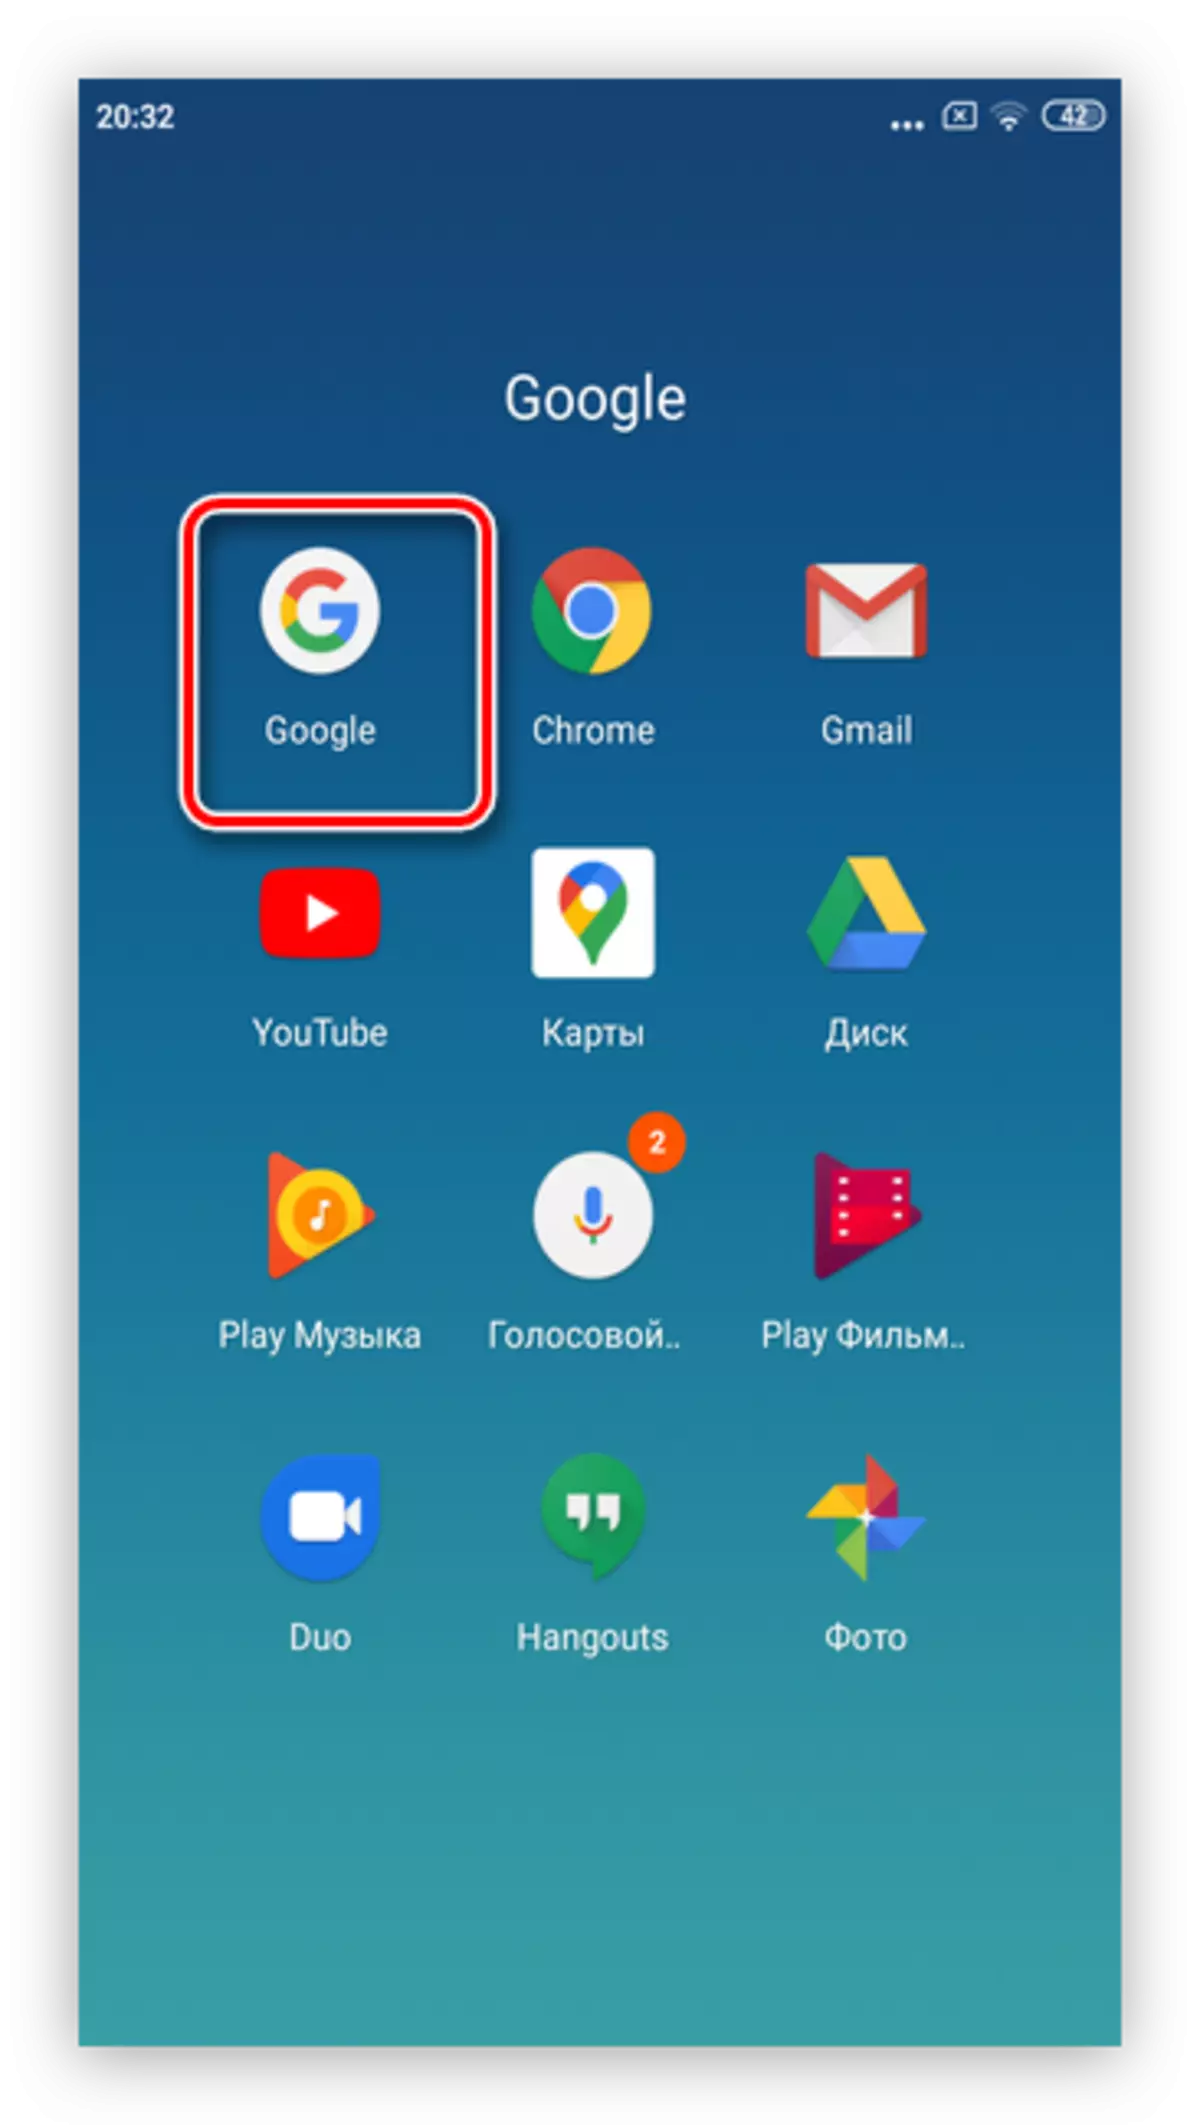 Iftaħ Google App biex tneħħi r-reklamar tal-Google fuq Smartphones Android permezz tas-sistema